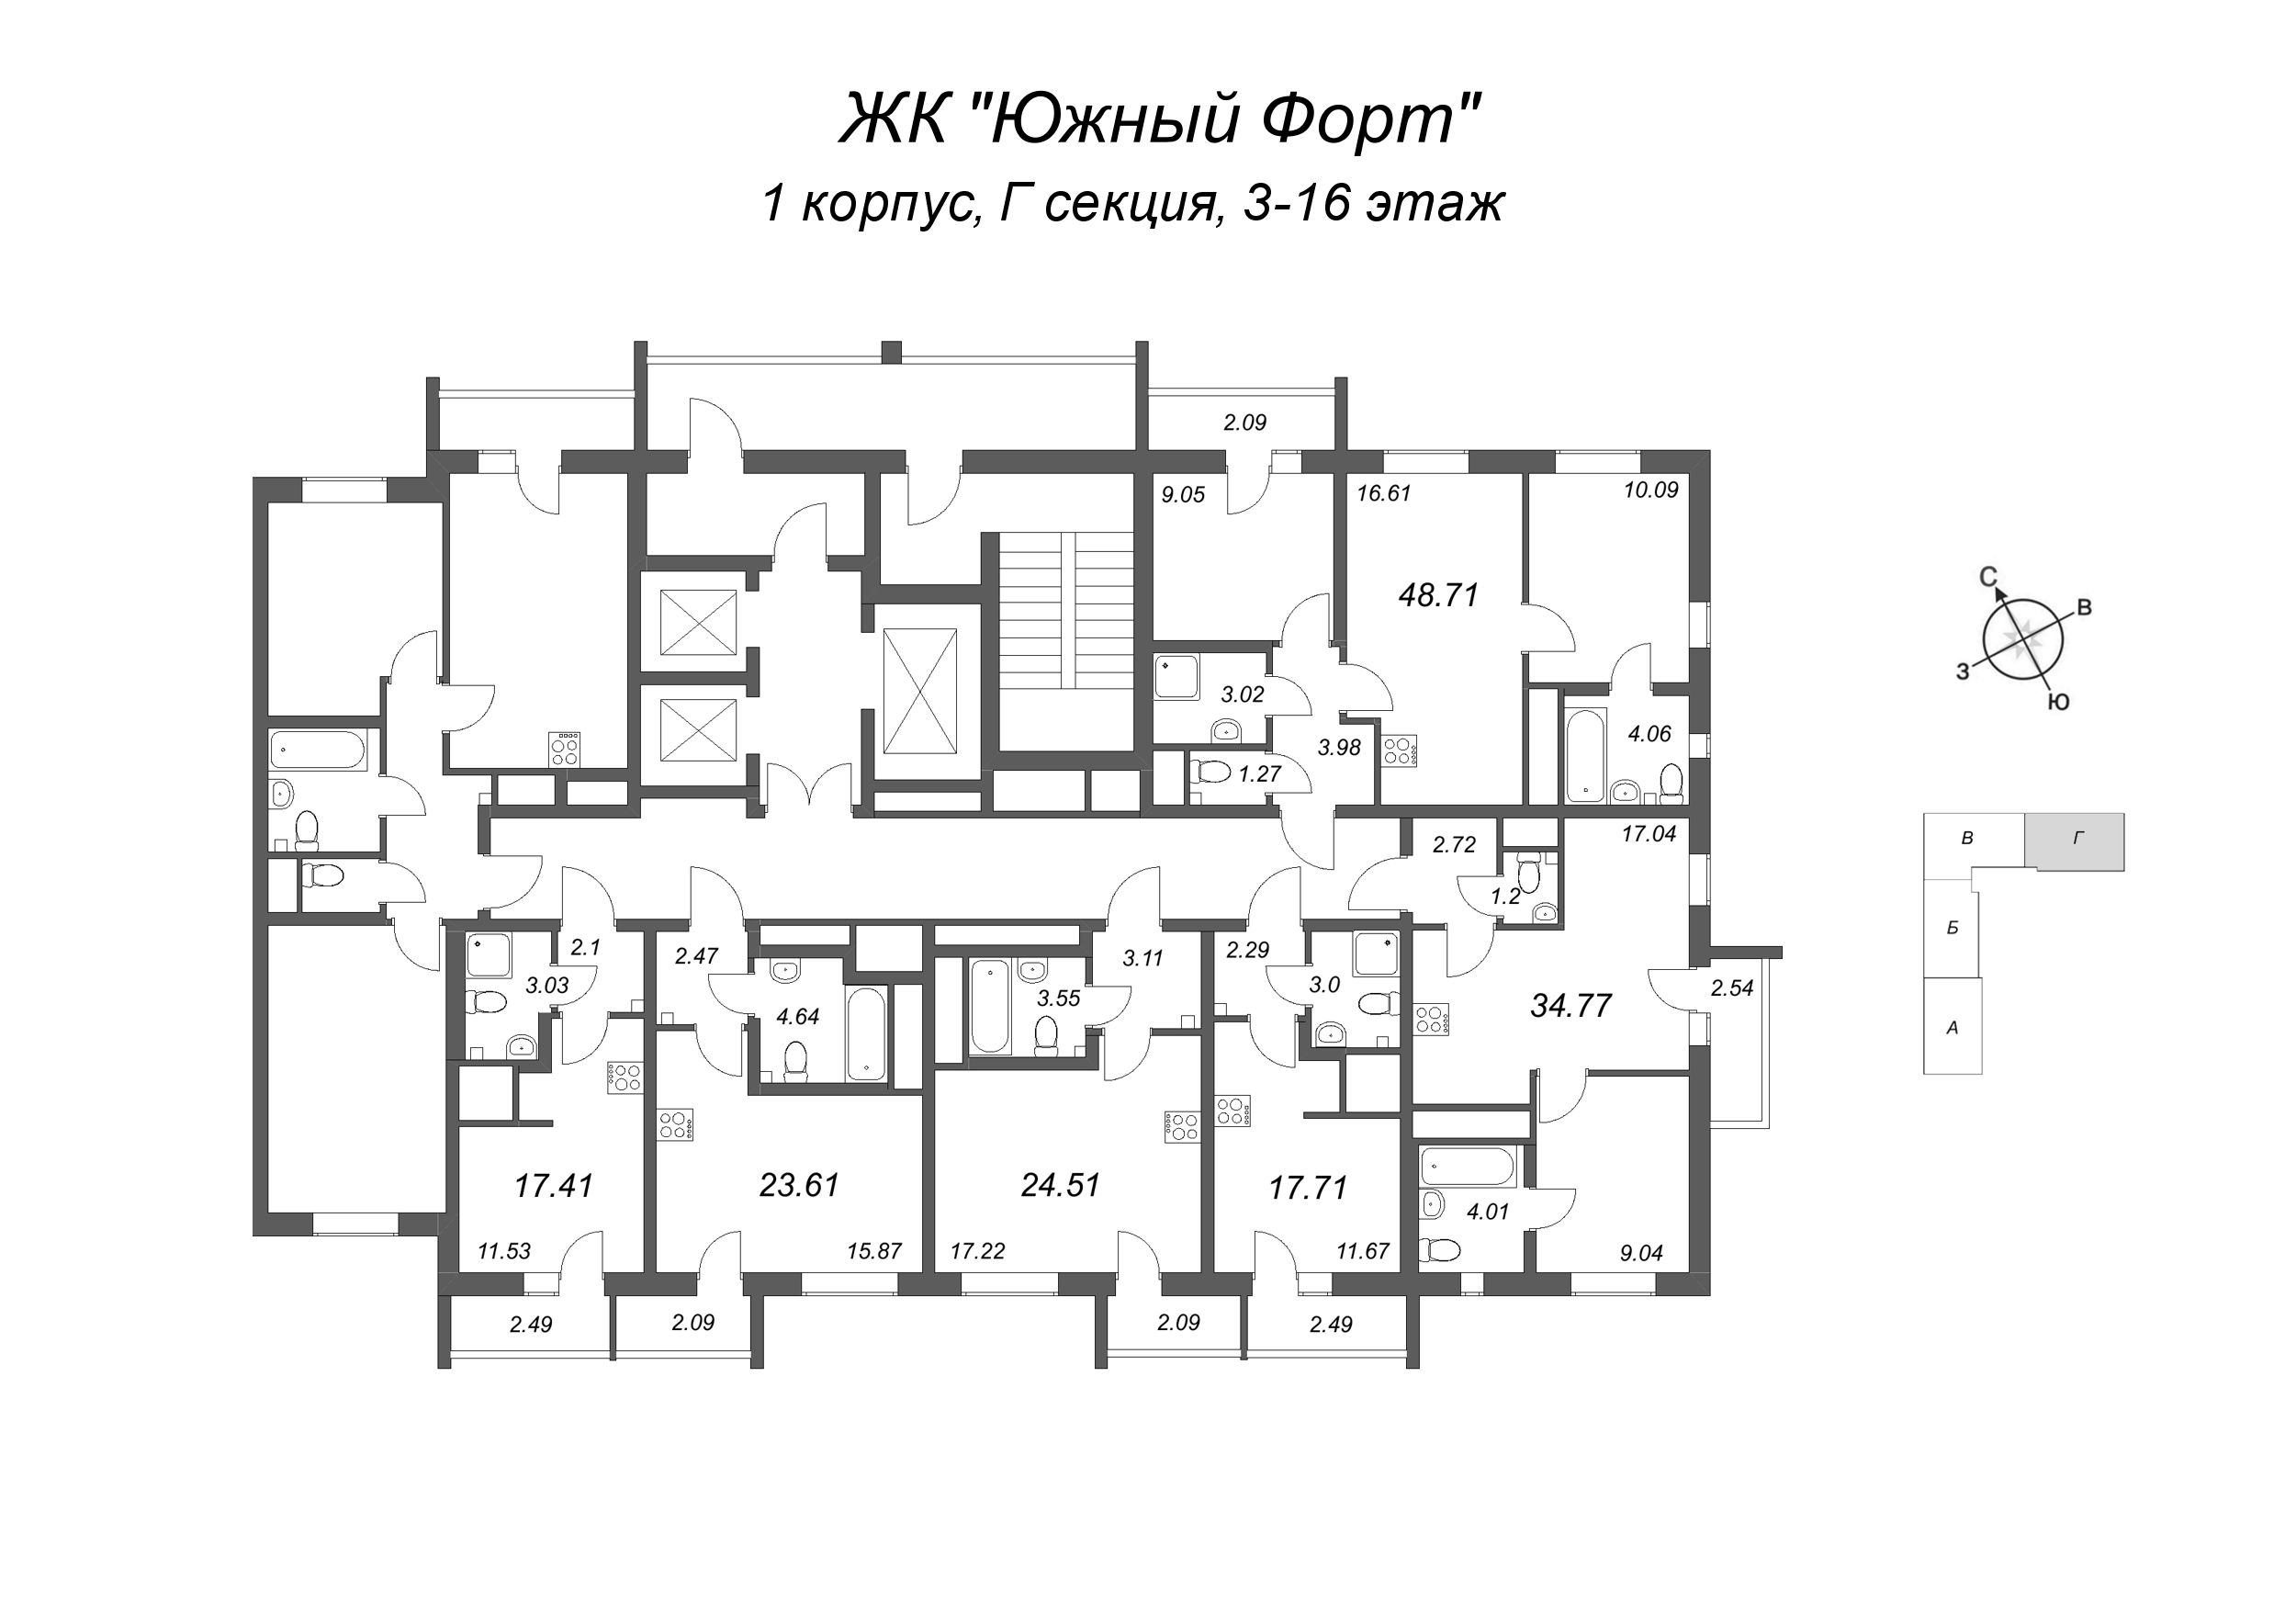 2-комнатная (Евро) квартира, 34.77 м² в ЖК "Южный форт" - планировка этажа